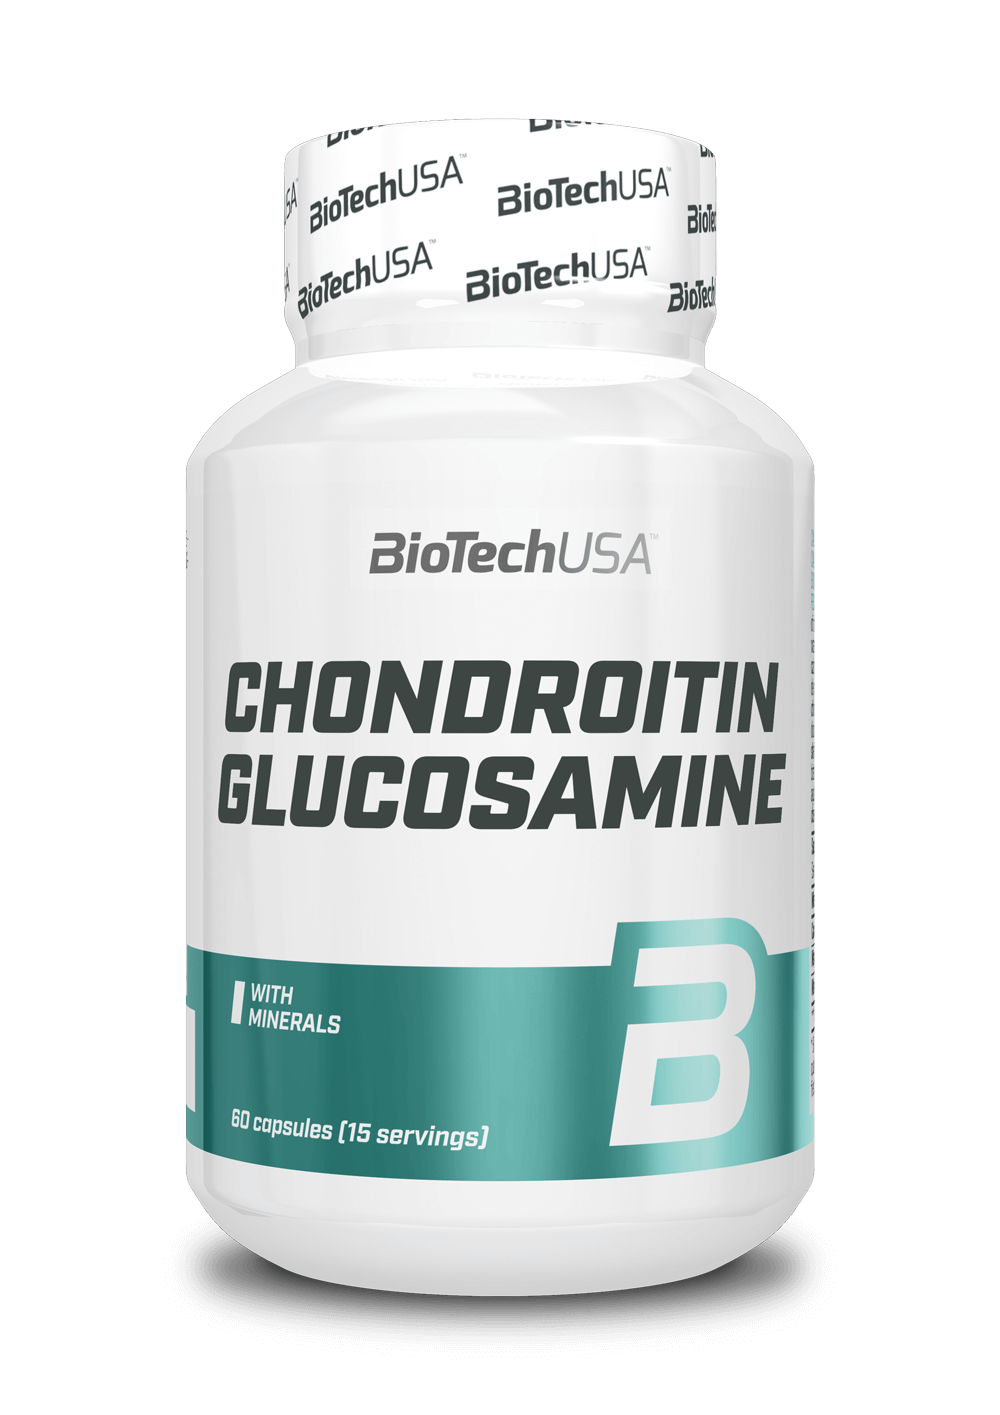 BiotechUSA - Glucsamine